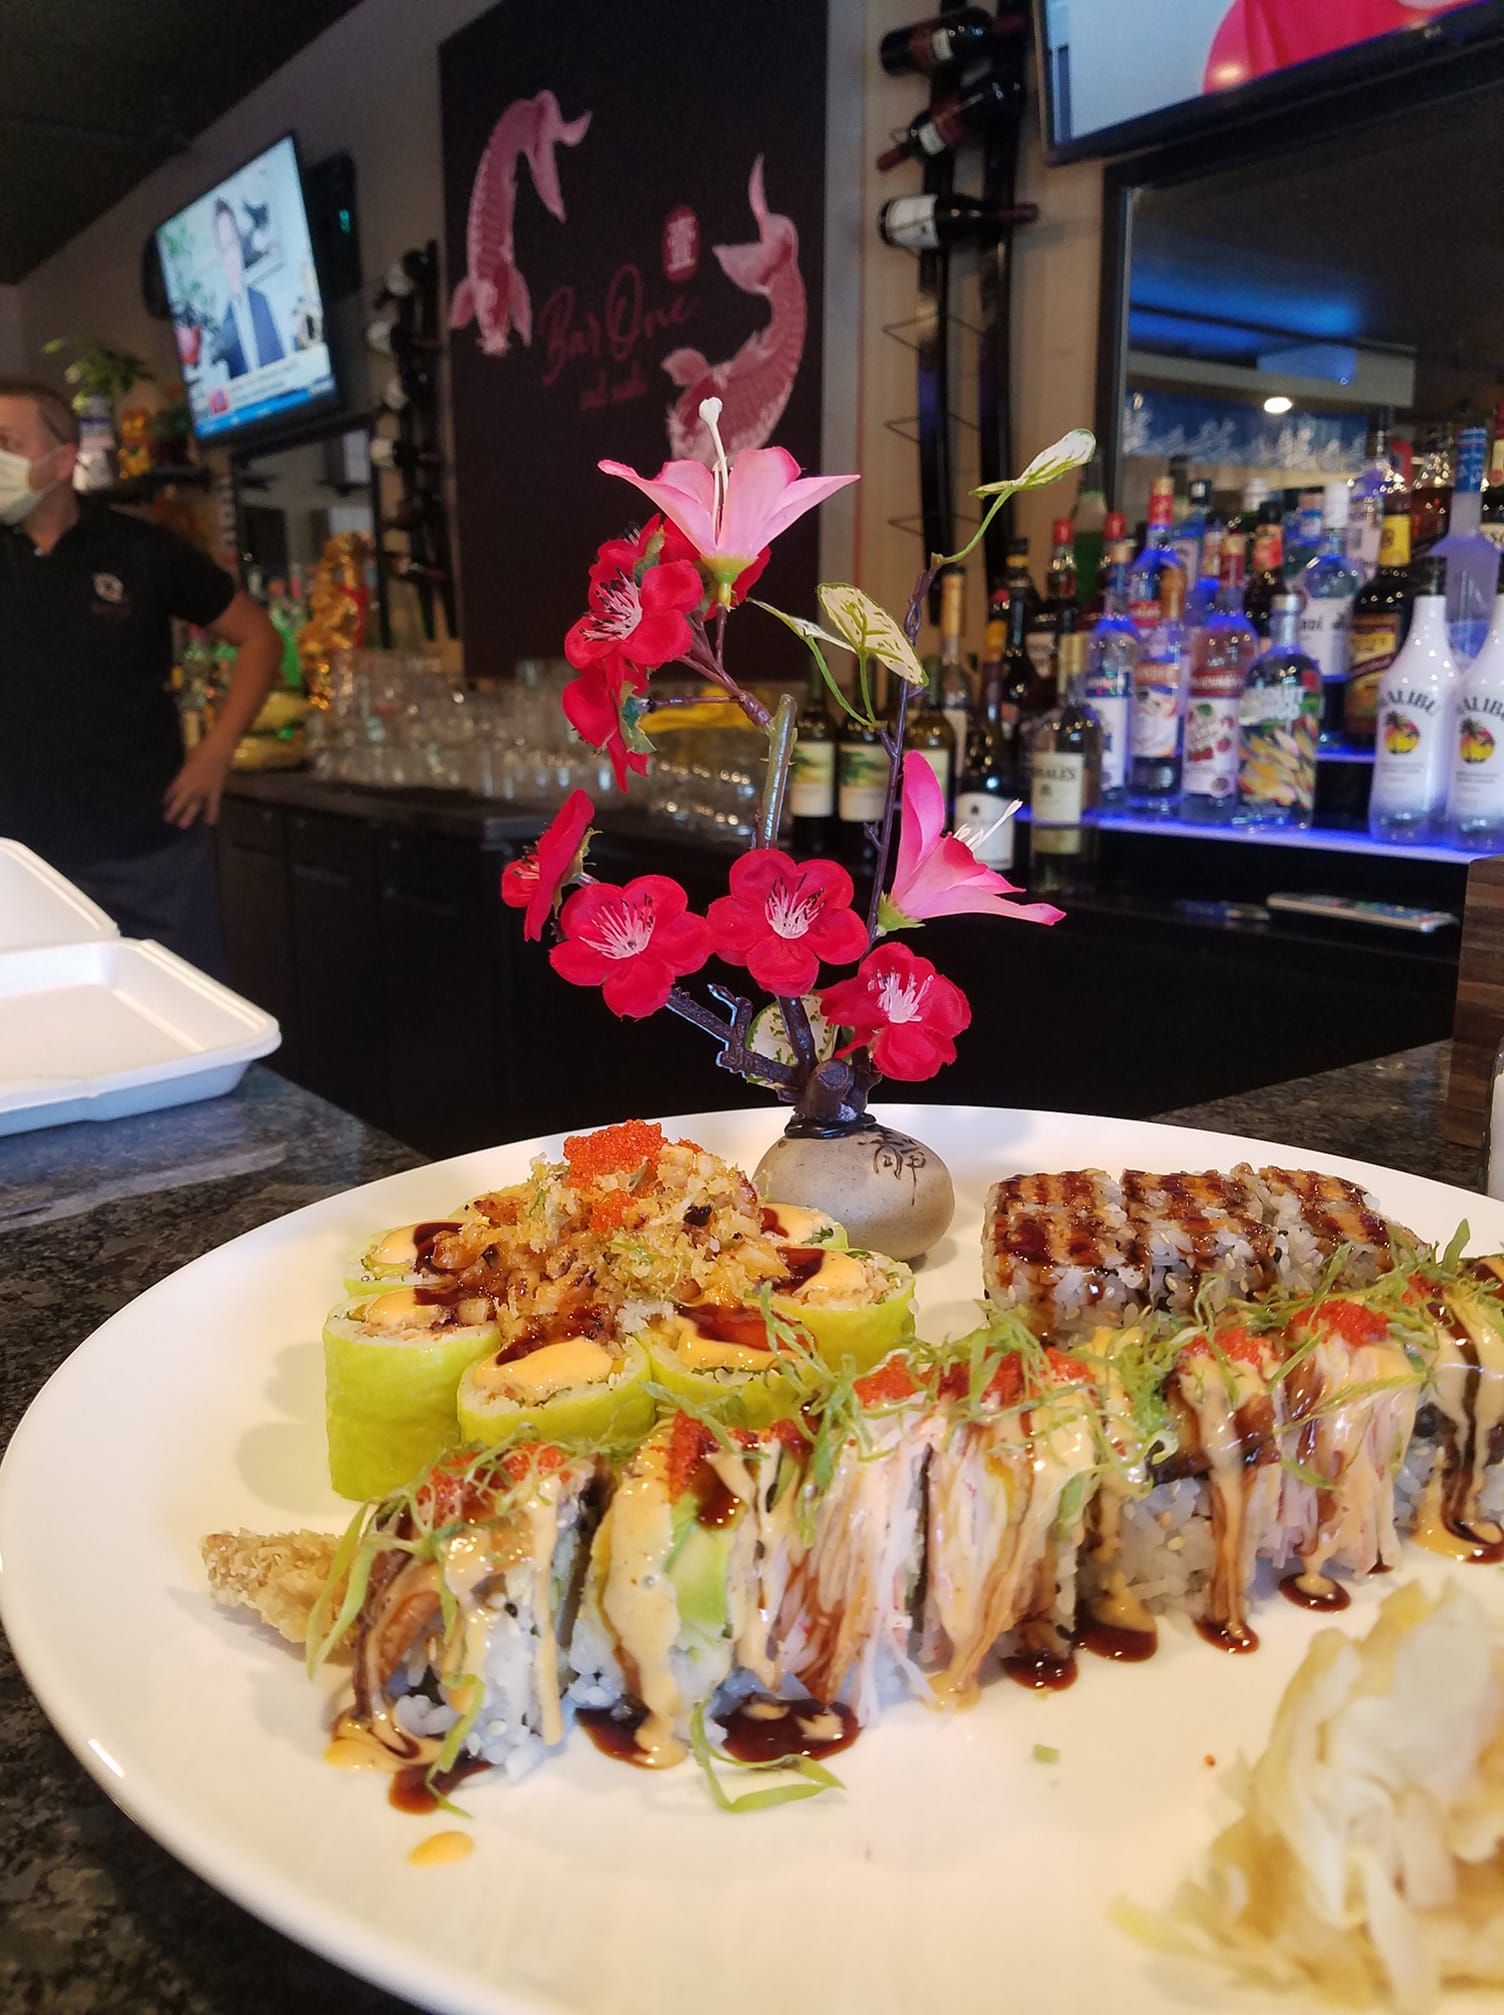 Bar One & Sushi | restaurant | 850 Southbridge St, Auburn, MA 01501, United States | 7743216075 OR +1 774-321-6075